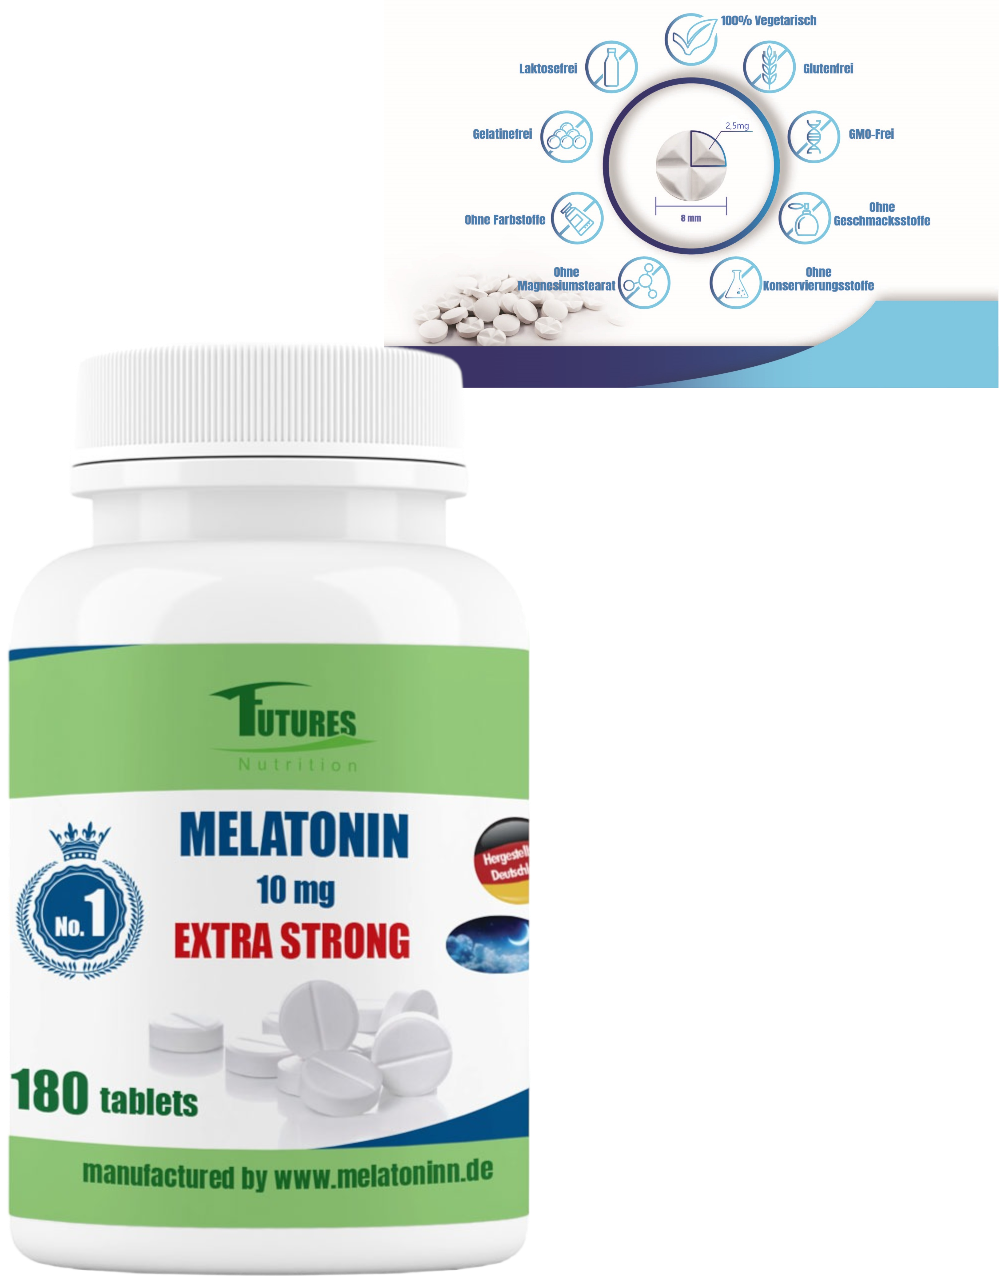 Pigułki nasenne - Melatoni 10 mg. 180 tabletek